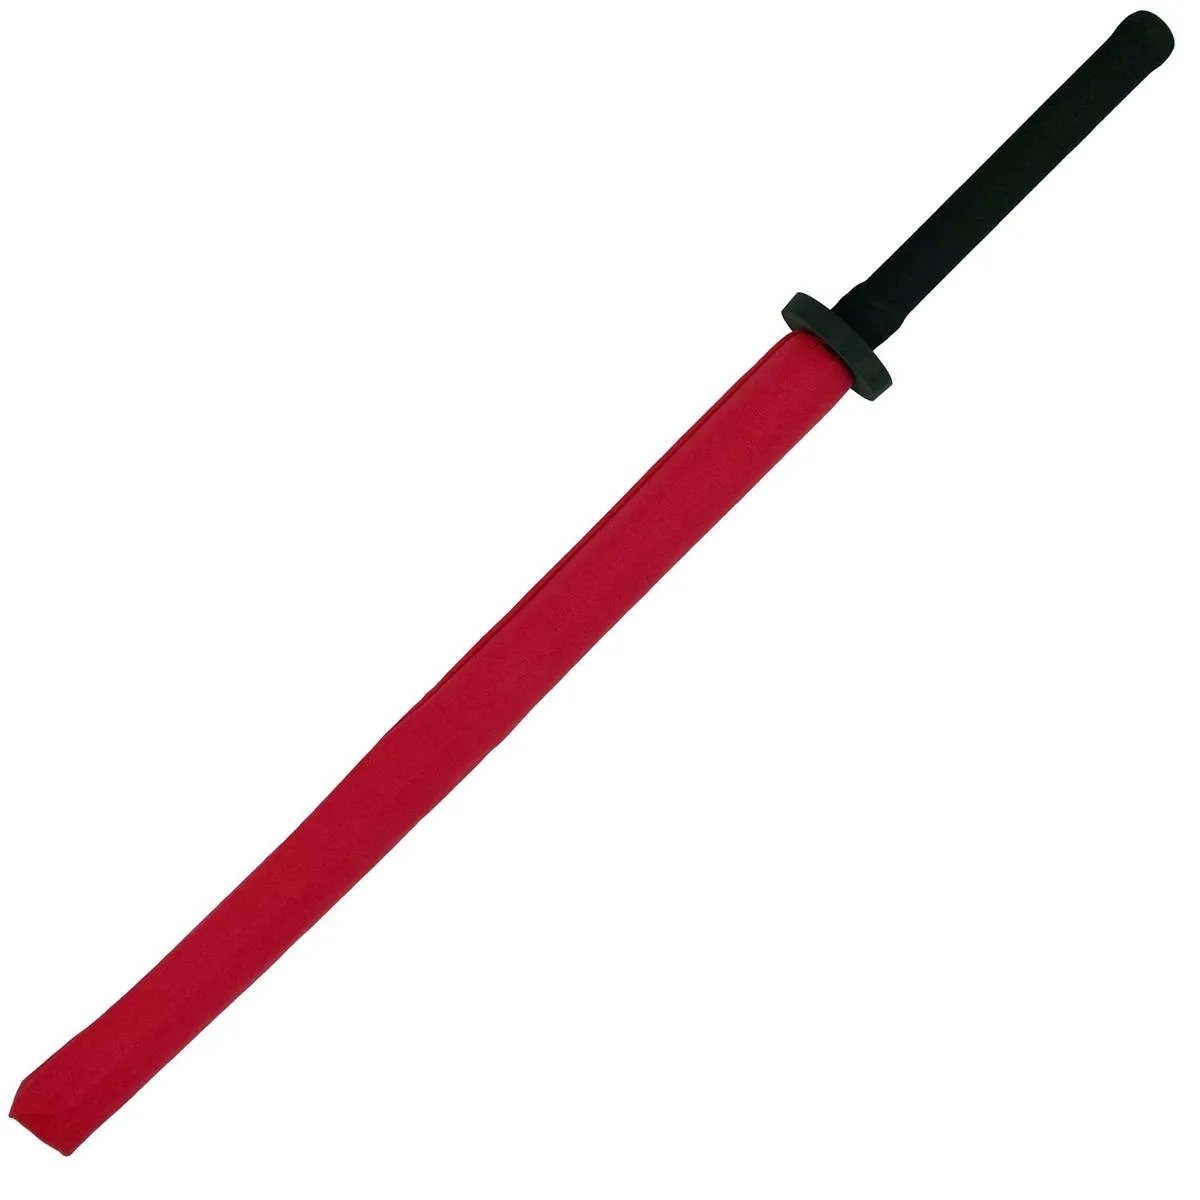 Chanbara træningssværd CHOKEN 95 cm rød